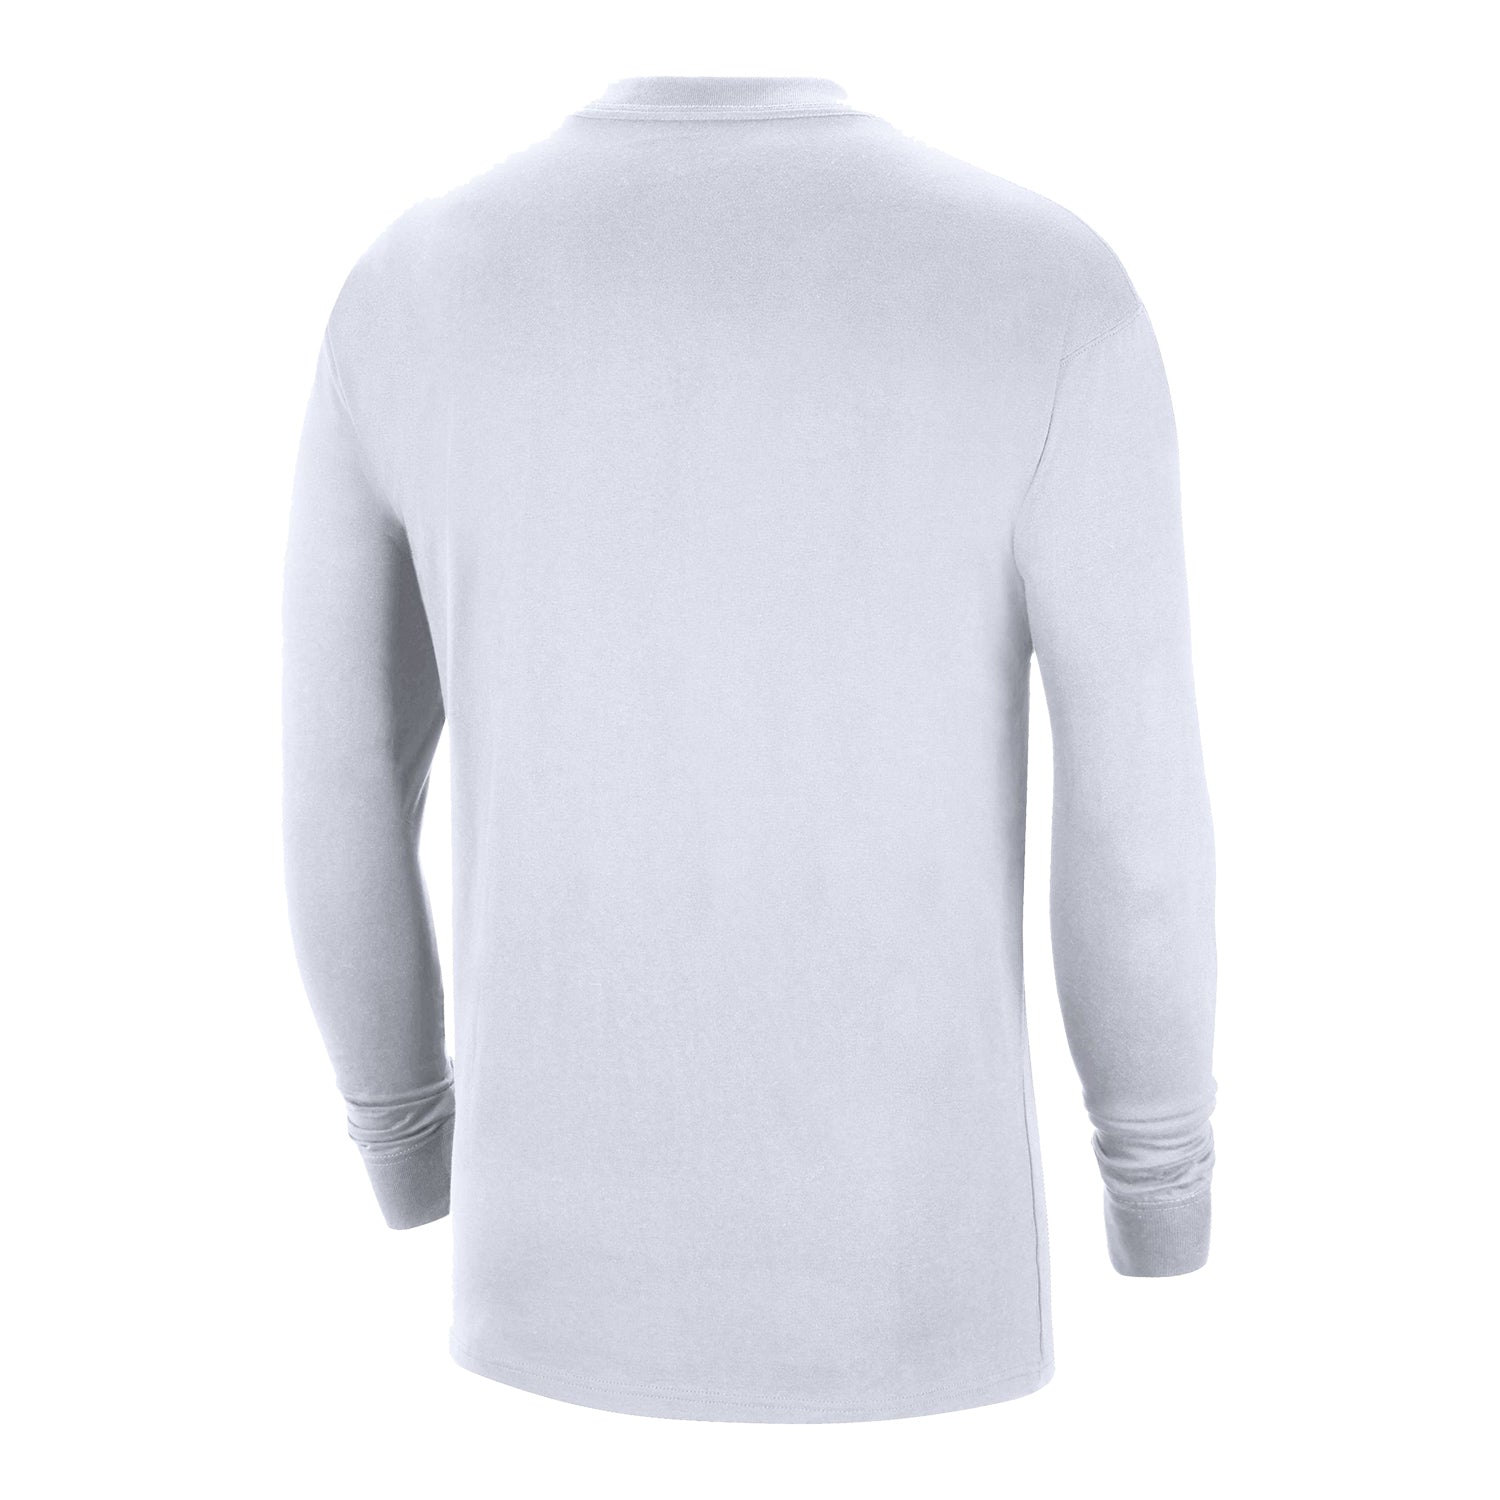 Chicago Bulls Nike Jordan White Long Sleeve T-Shirt – Official Chicago ...